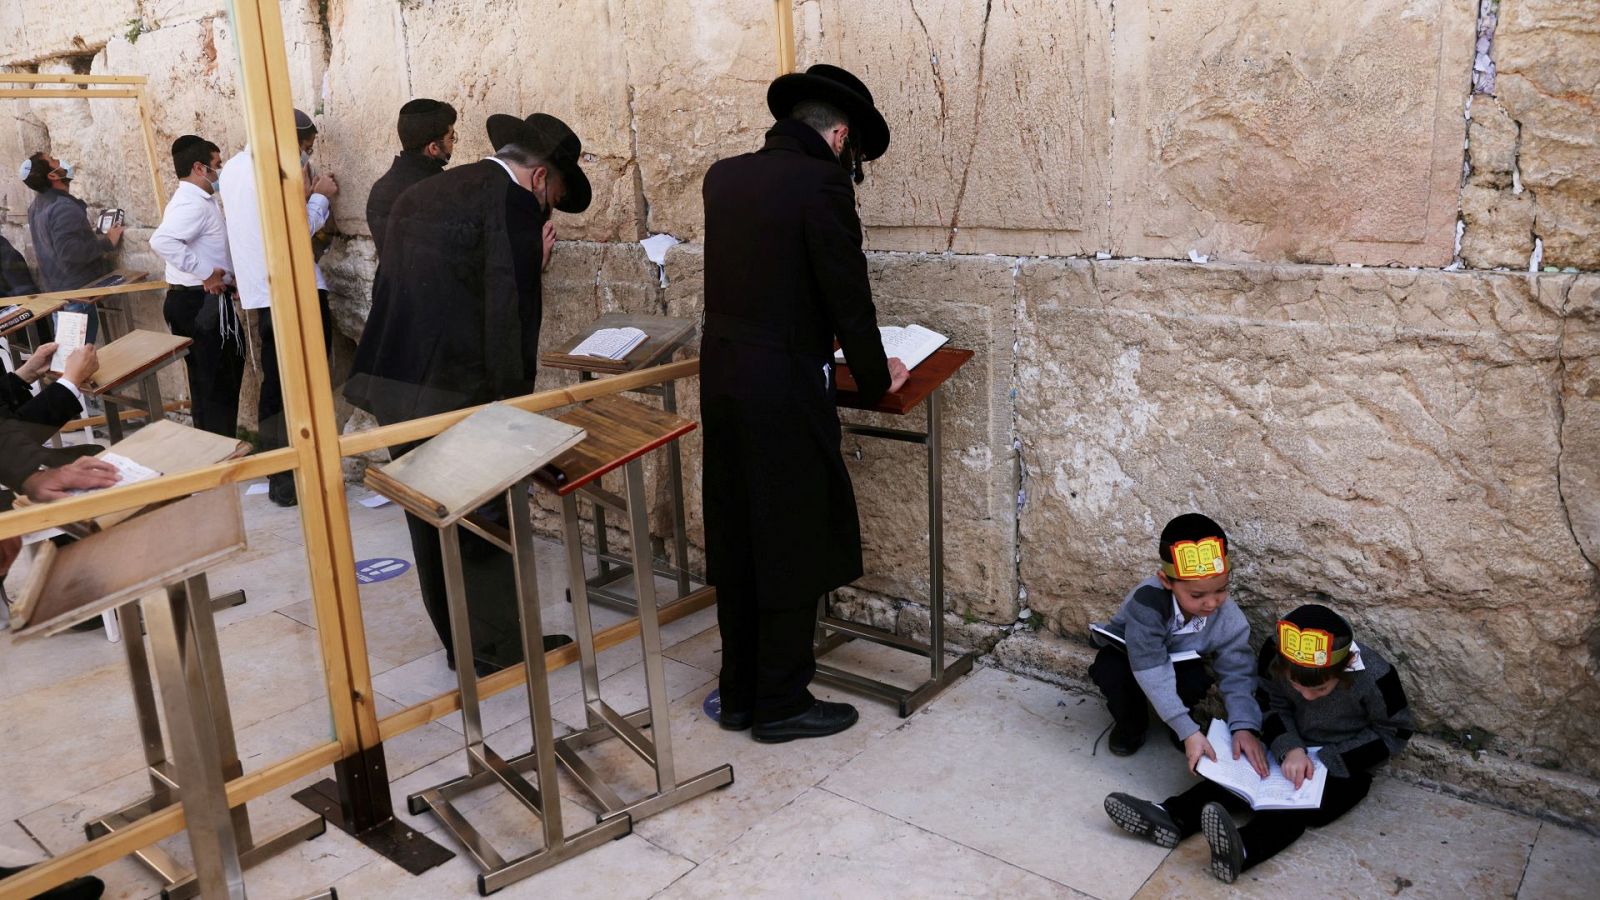 Niños judíos ultraortodoxos juegan mientras varios hombres rezan frente al Muro de las Lamentaciones de Jerusalén